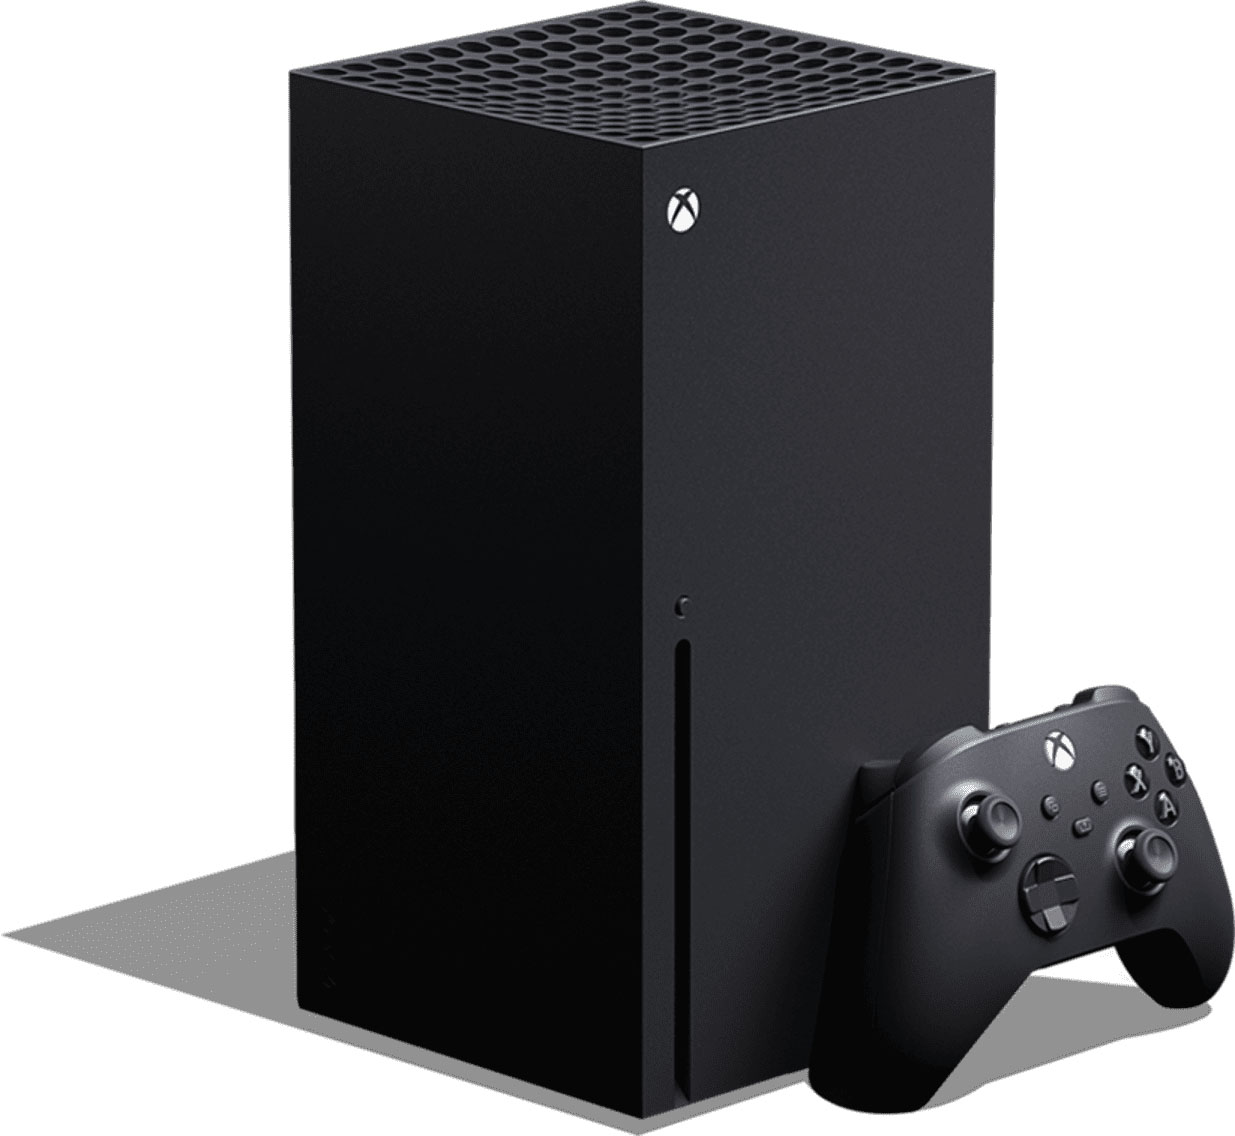 Black Friday : le prix des manettes Xbox Series X/S s'effondre